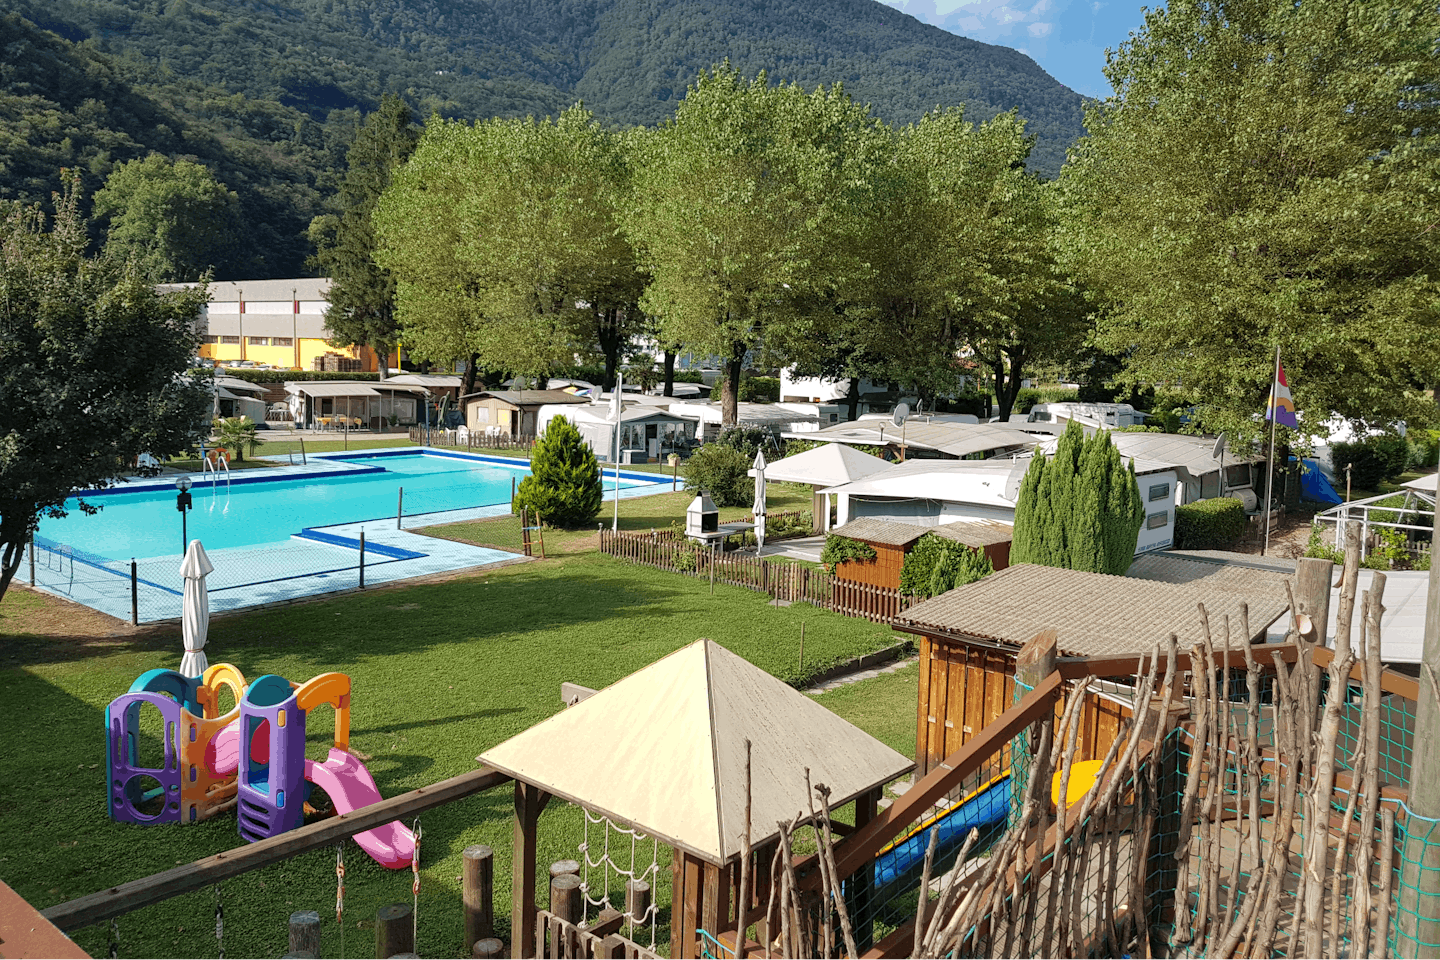 Camping & Pool Joghi e Bubu - Der Kinderspielplatz und der Swimmingpool des Campingplatzes mit Stellplätzen im Hintergrund